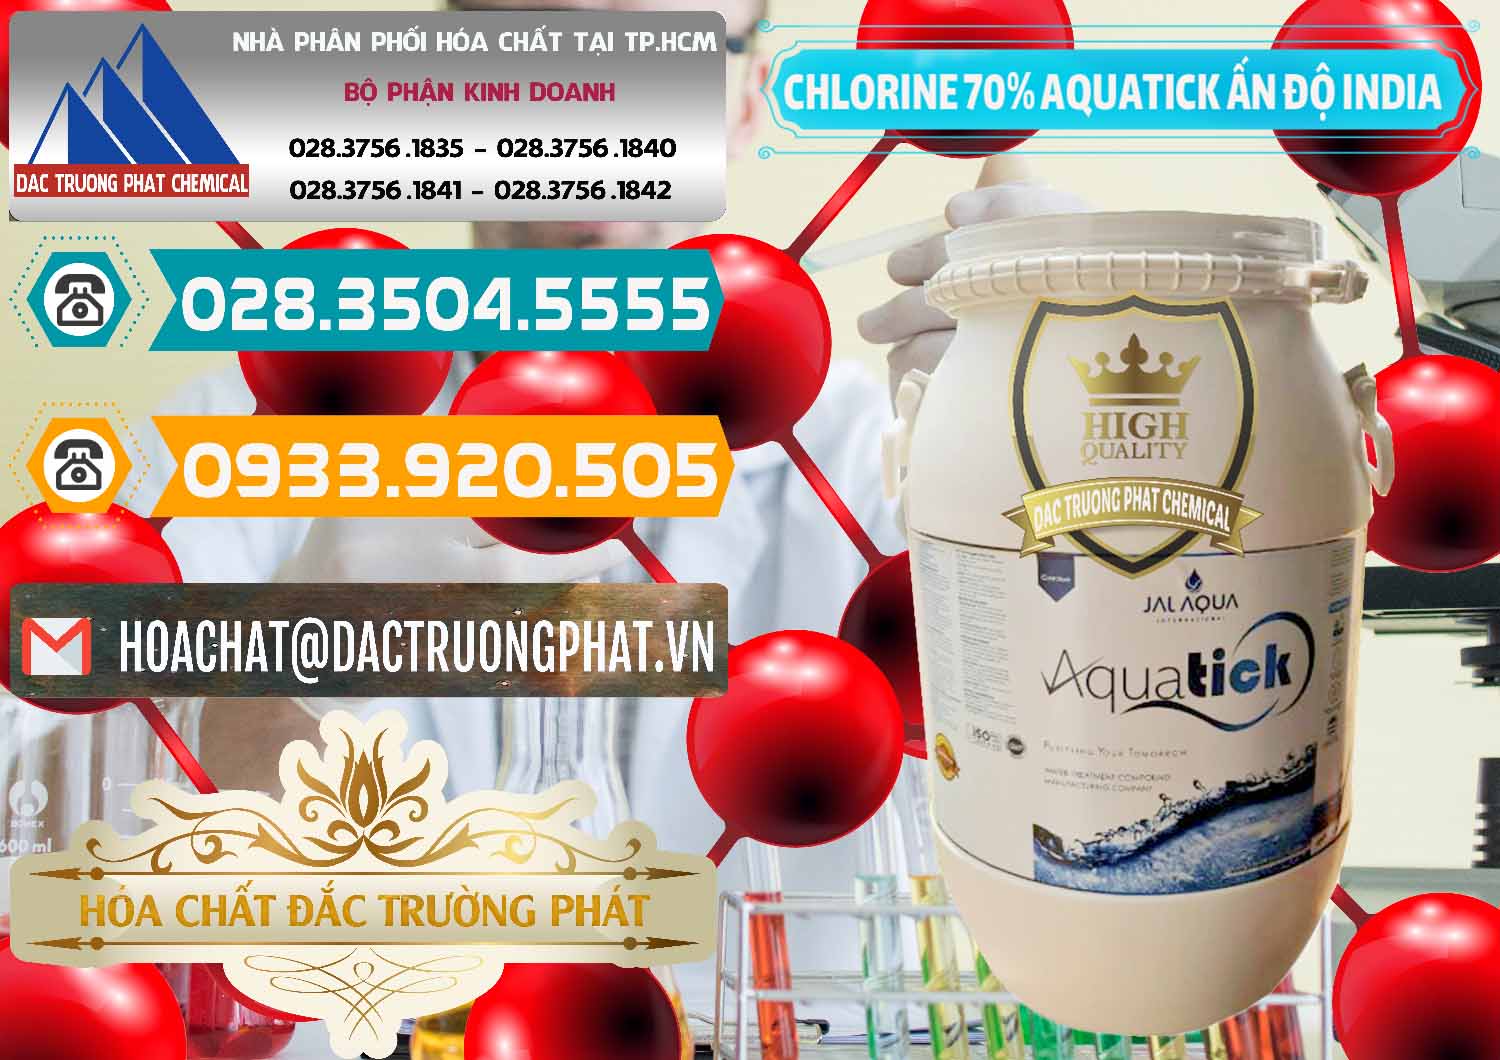 Chuyên cung ứng và bán Chlorine – Clorin 70% Aquatick Jal Aqua Ấn Độ India - 0215 - Chuyên kinh doanh & cung cấp hóa chất tại TP.HCM - congtyhoachat.vn